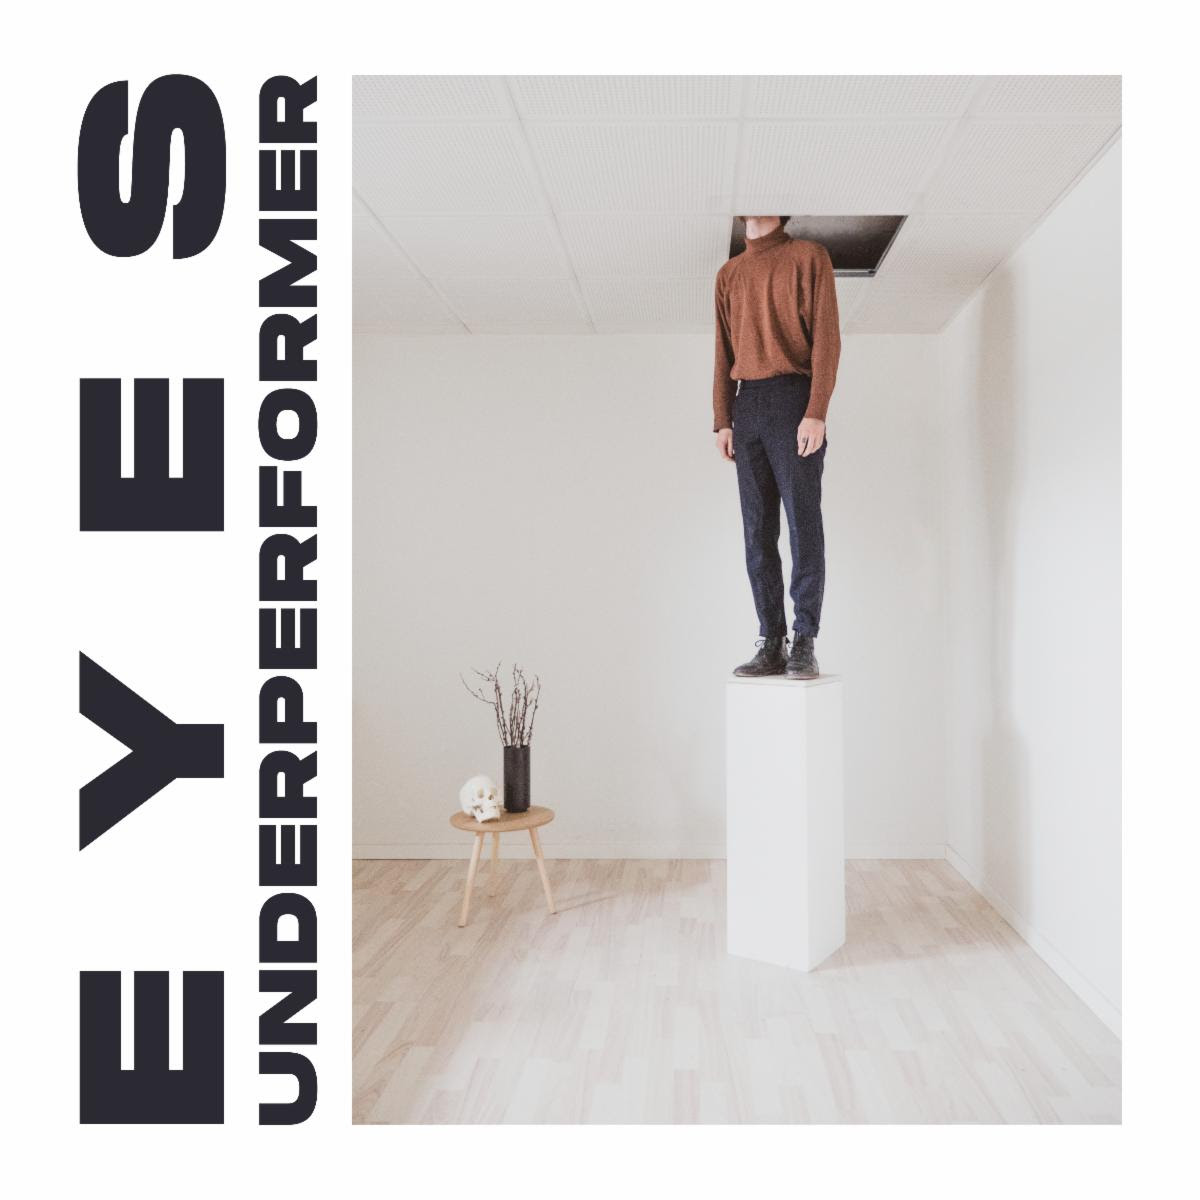 Desde Dinamarca EYES prepara el lanzamiento de su disco debut Underperformer, dos adelantos en linea